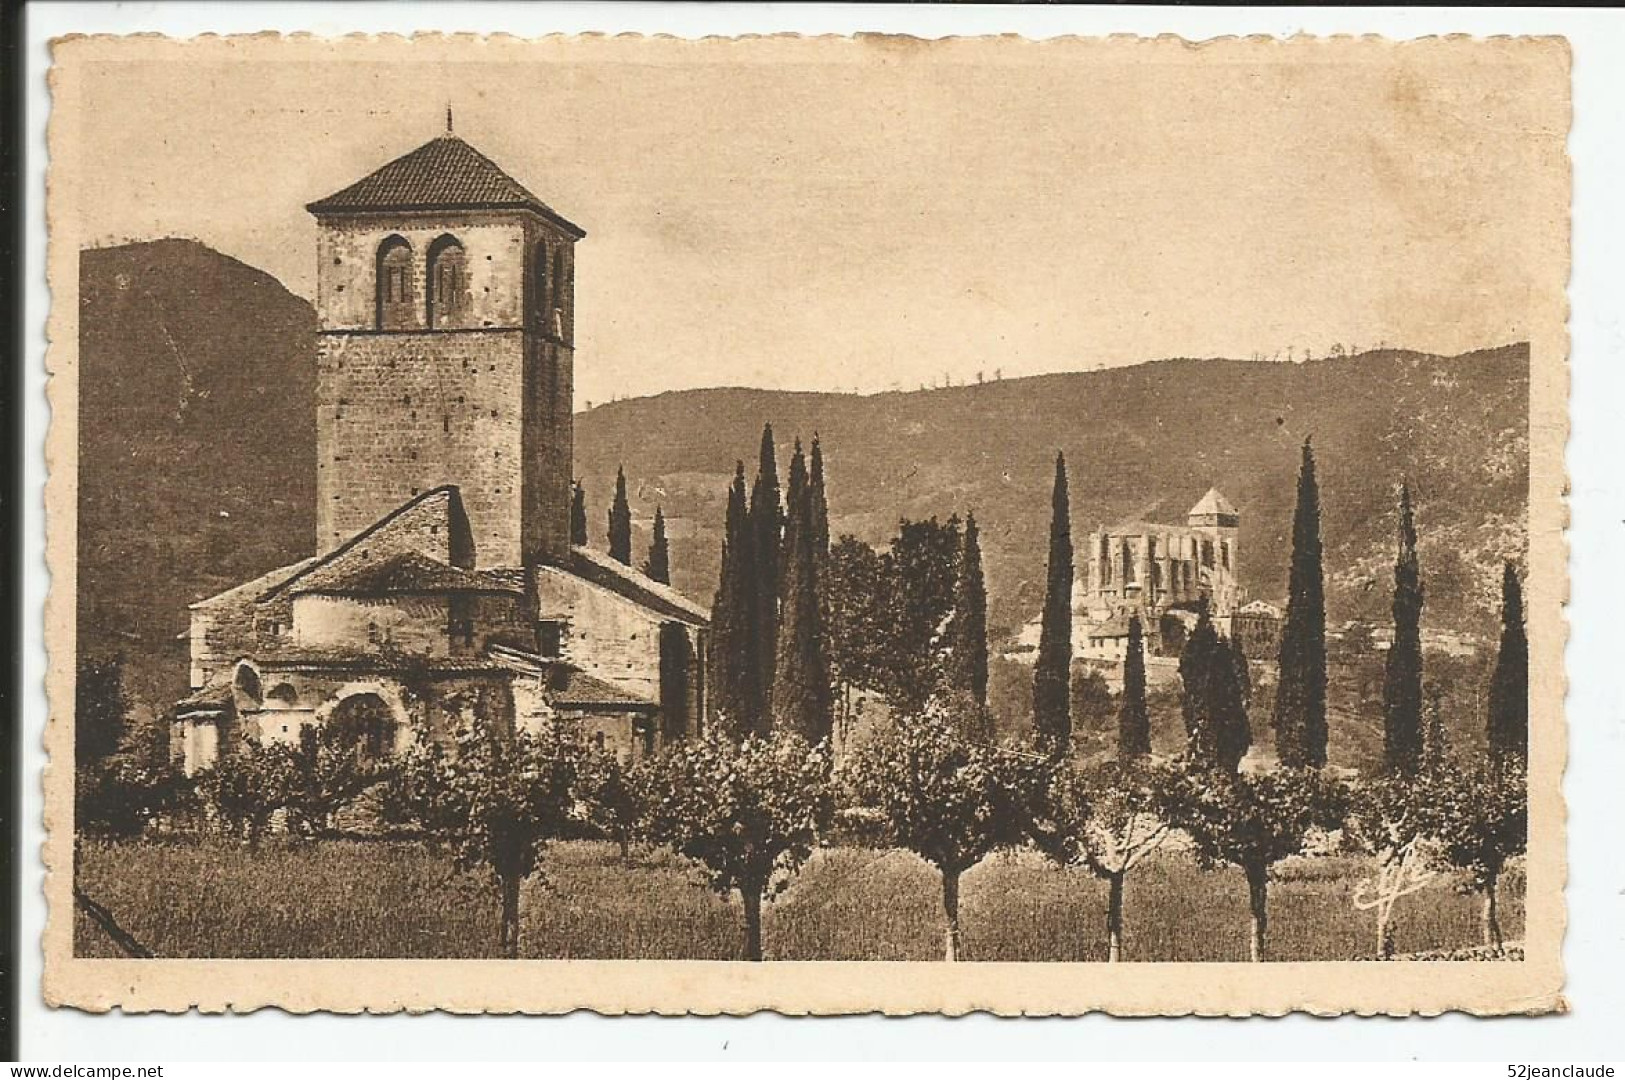 L'Eglise Saint Just Et Saint Bertrand    1950    N° 170 - Saint Bertrand De Comminges